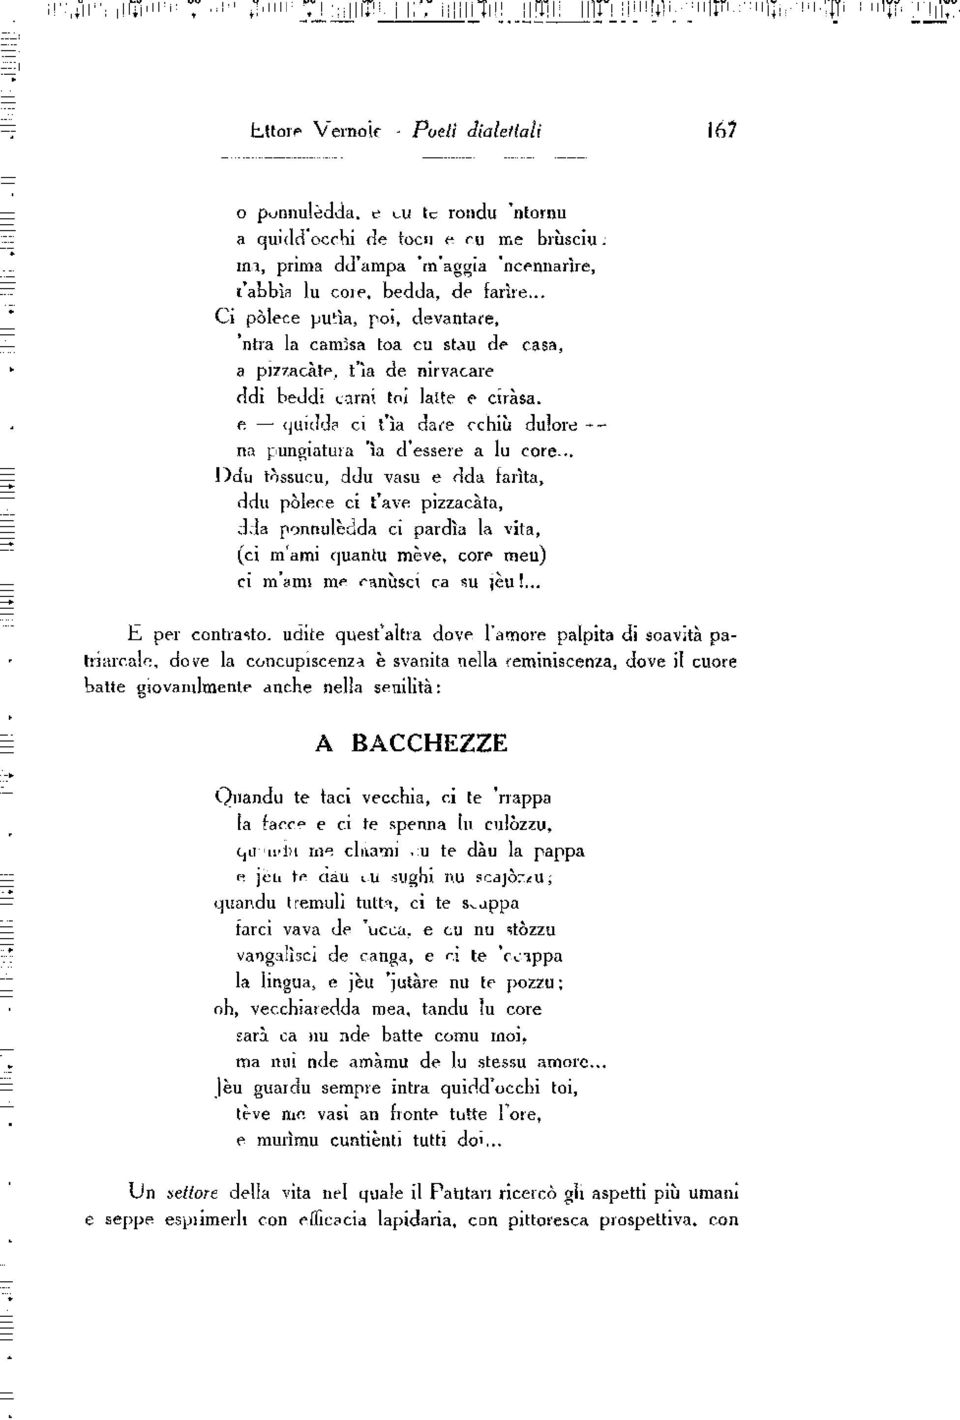 Poesie Di Natale In Dialetto Salentino.Poeti Dialettali Il Pdf Free Download